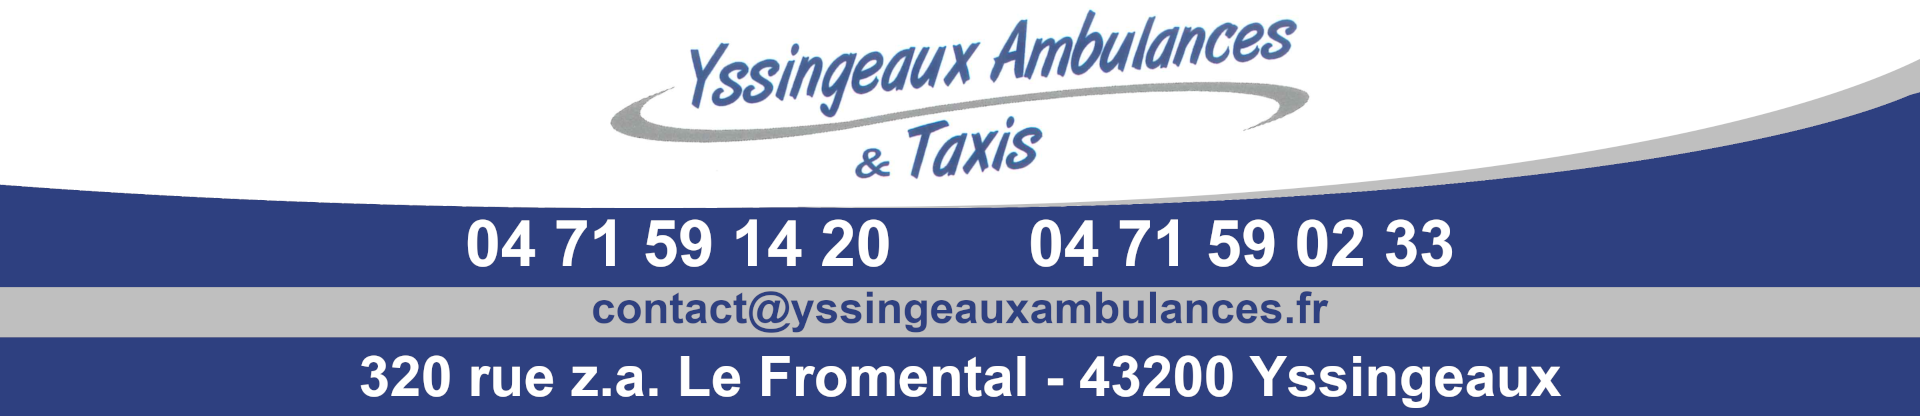 Yssingeaux ambulances et taxis internet